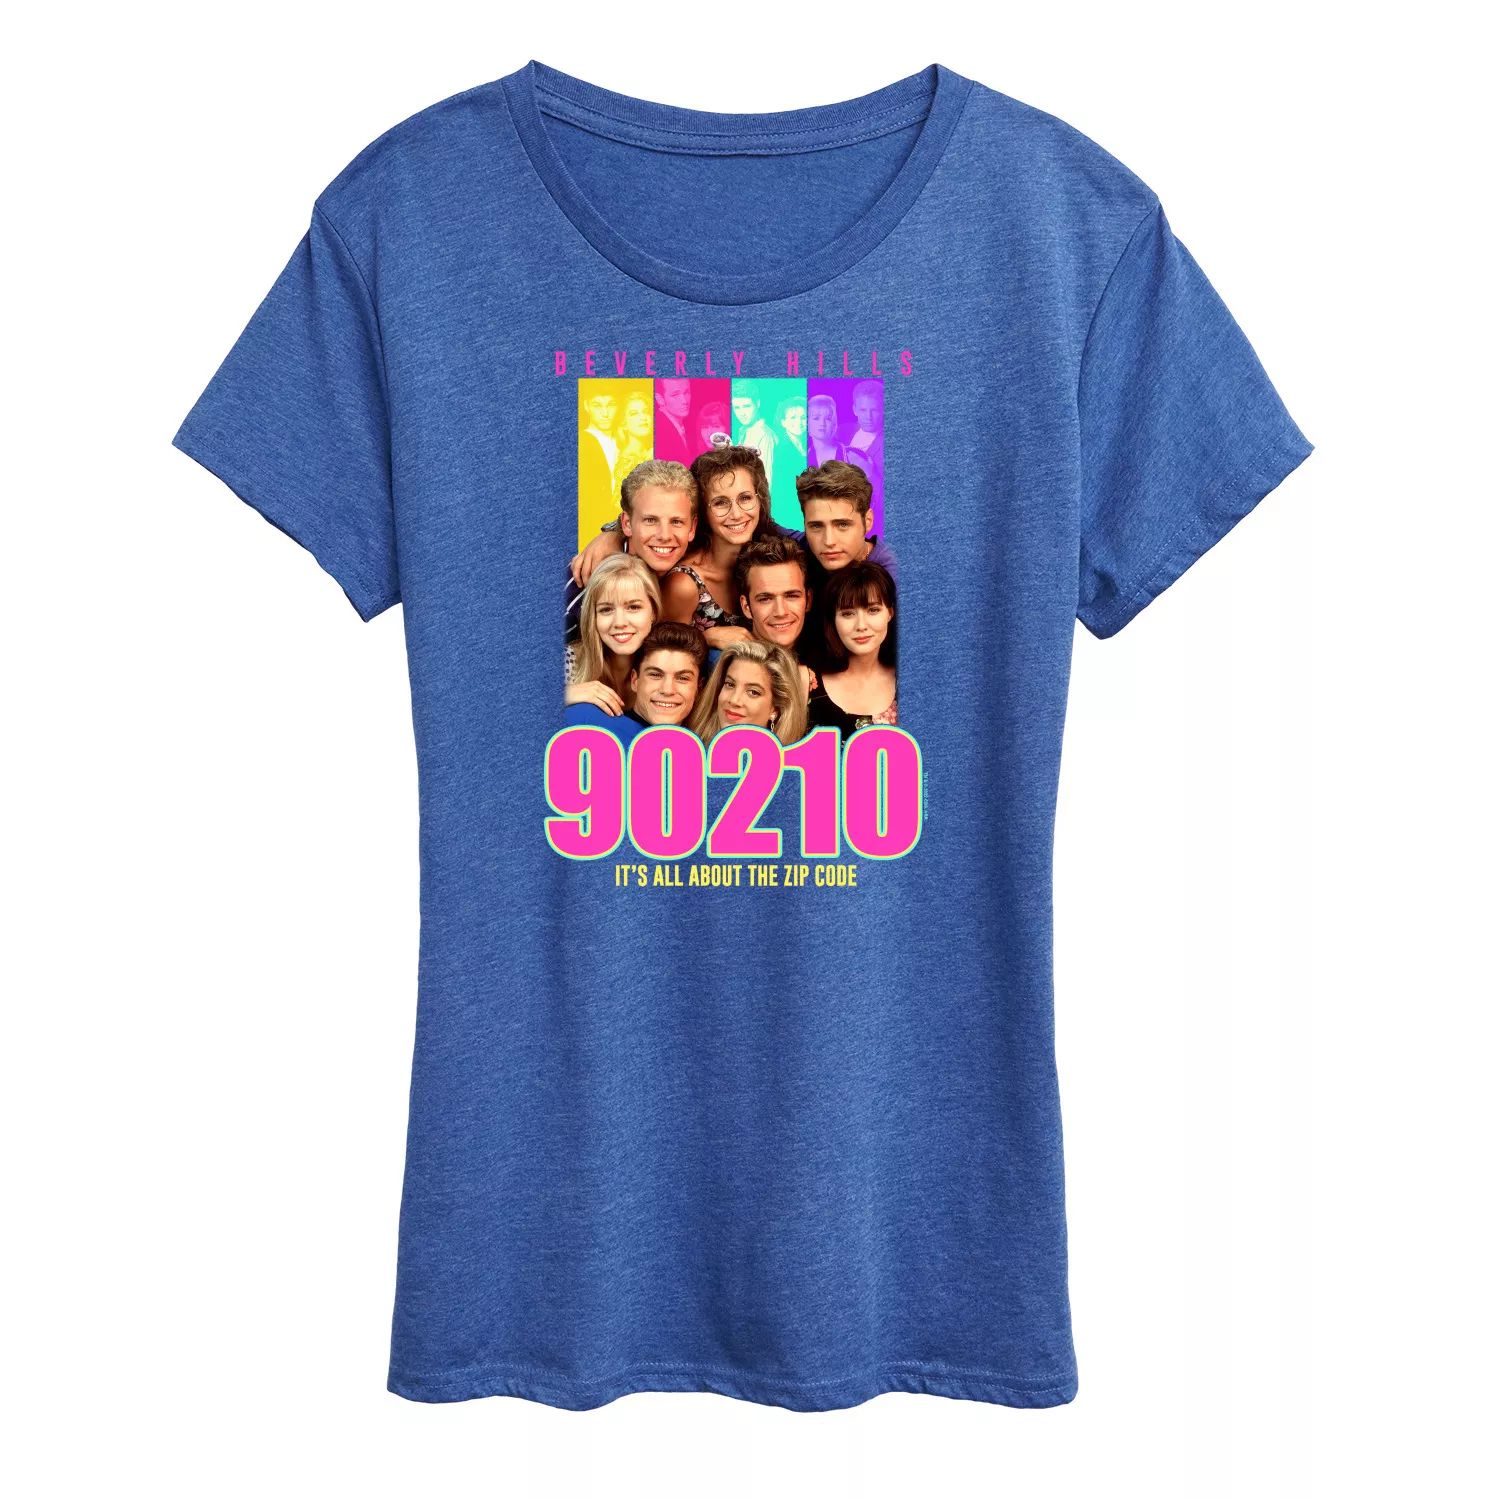 Женская футболка с рисунком группы символов 90210 Licensed Character